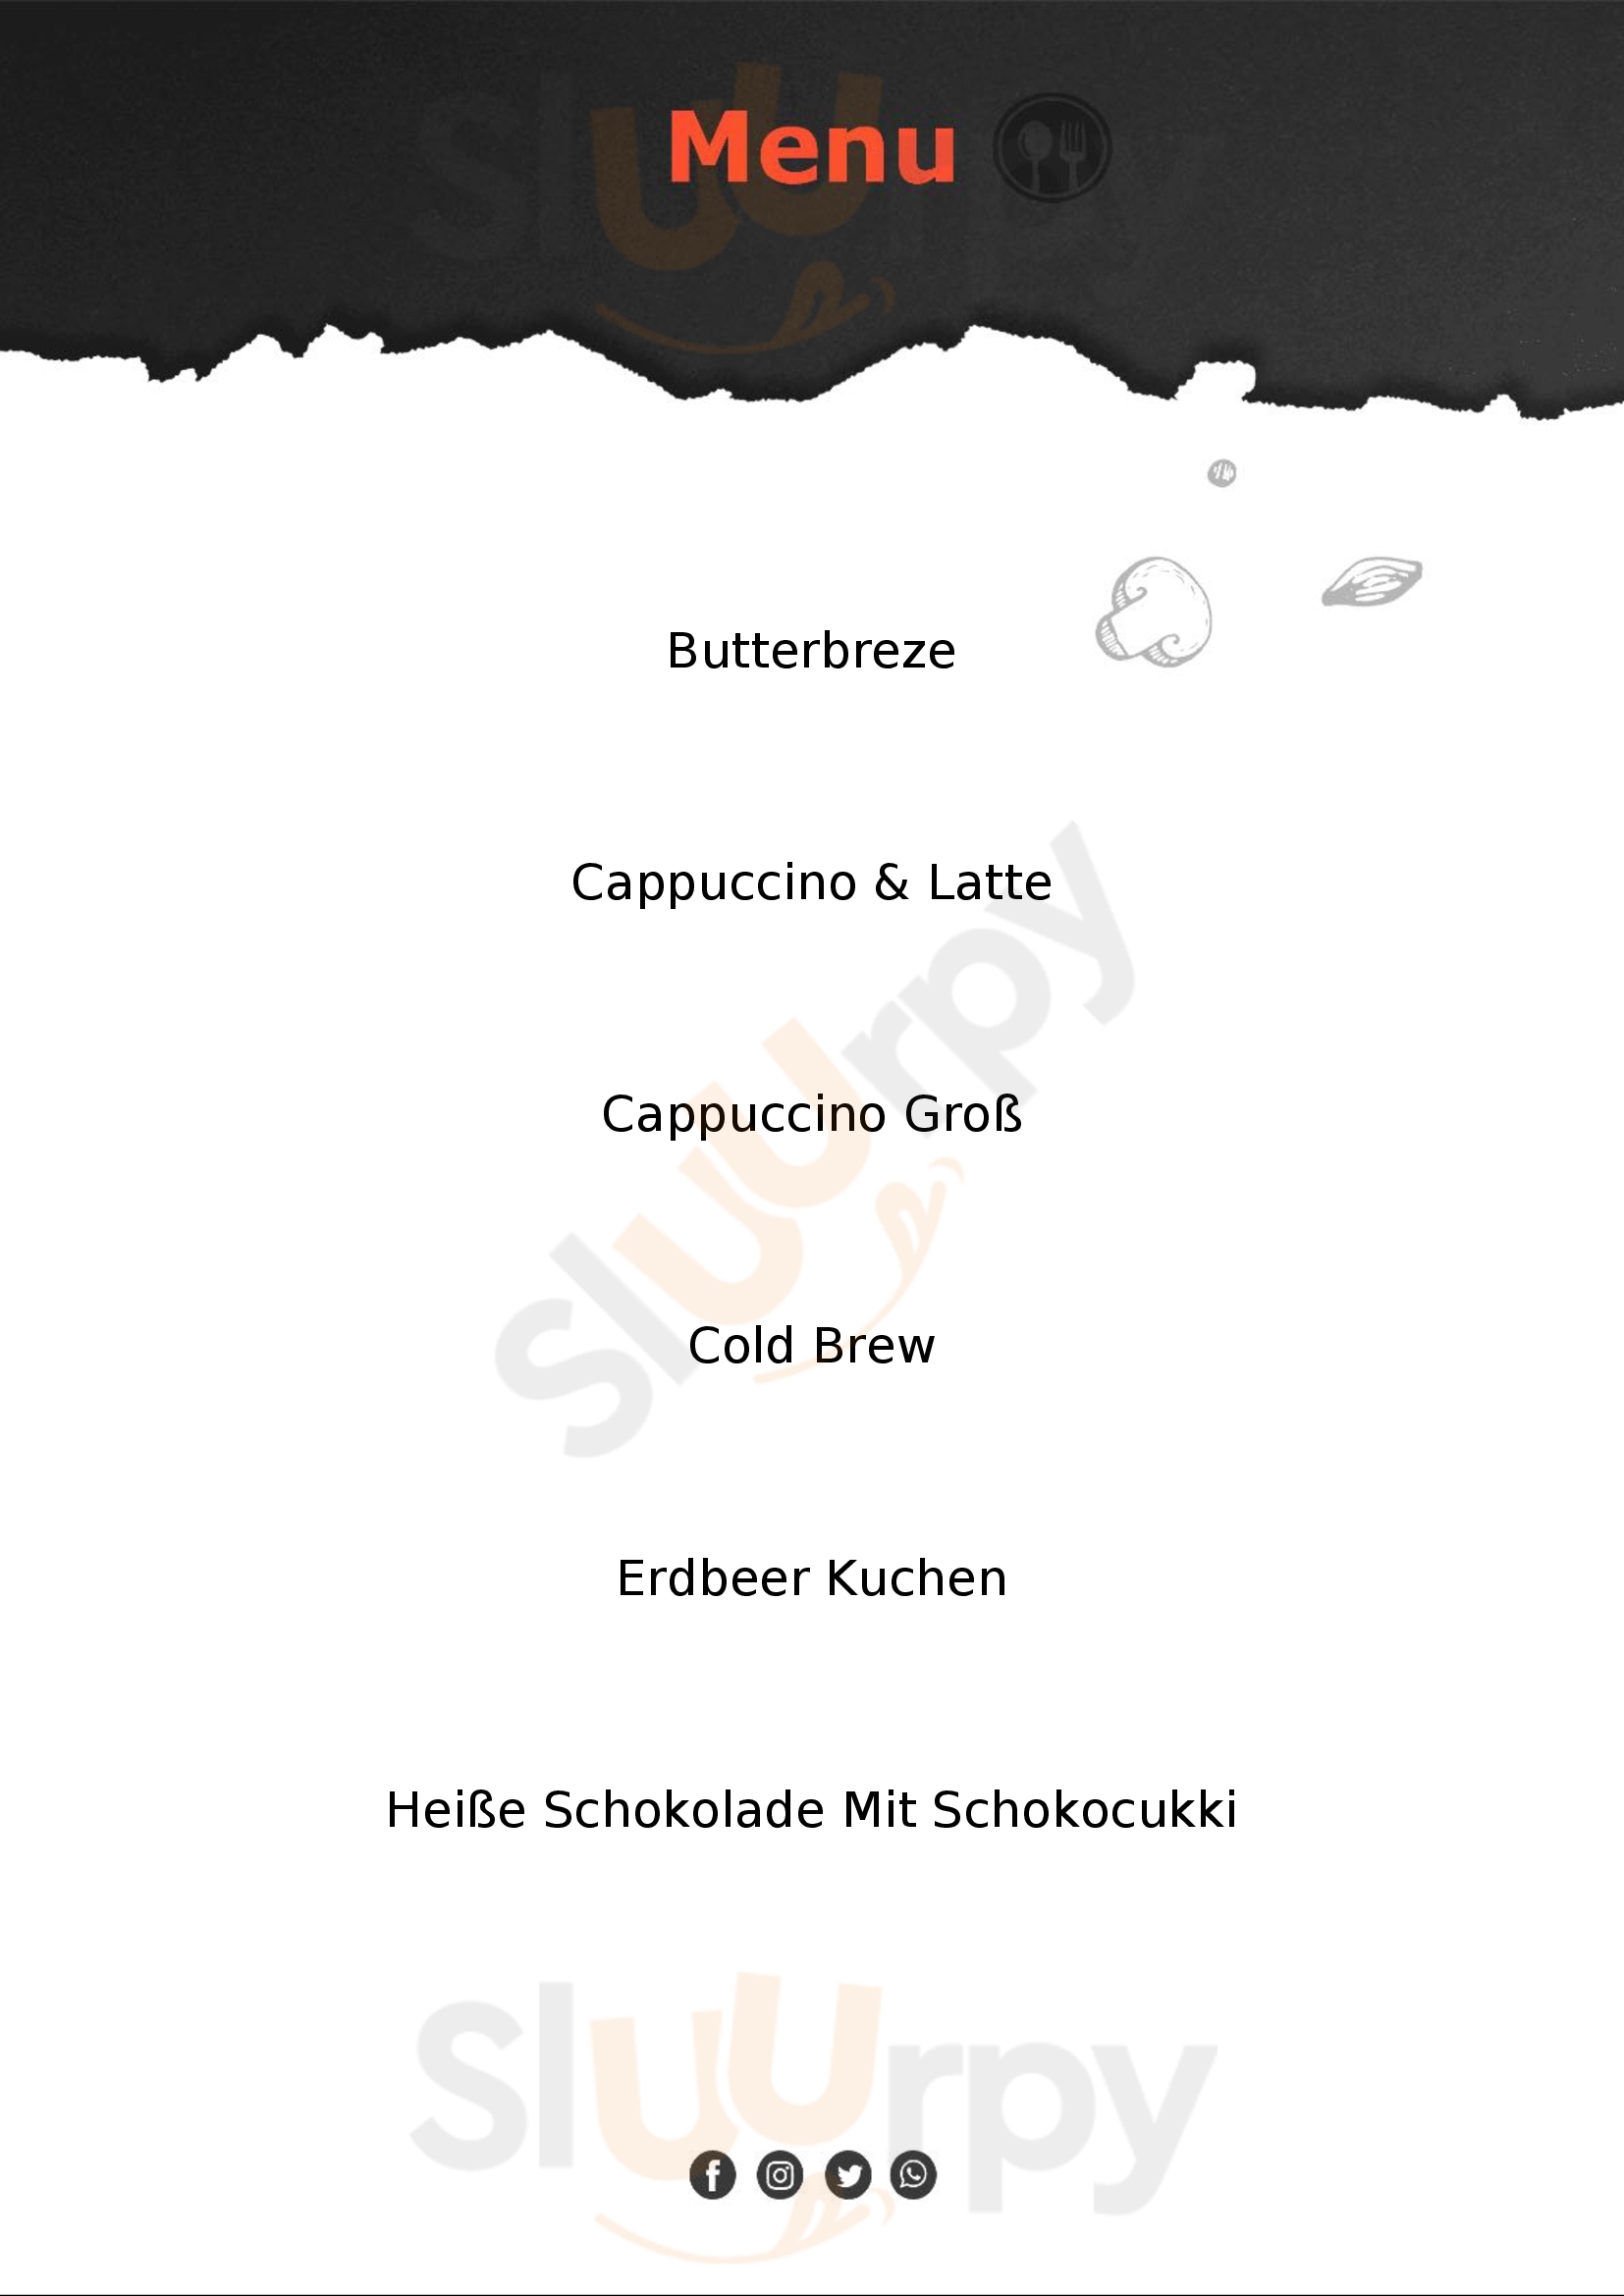 Coffee Fellows - Kaffee, Bagels, Frühstück Ingolstadt Menu - 1